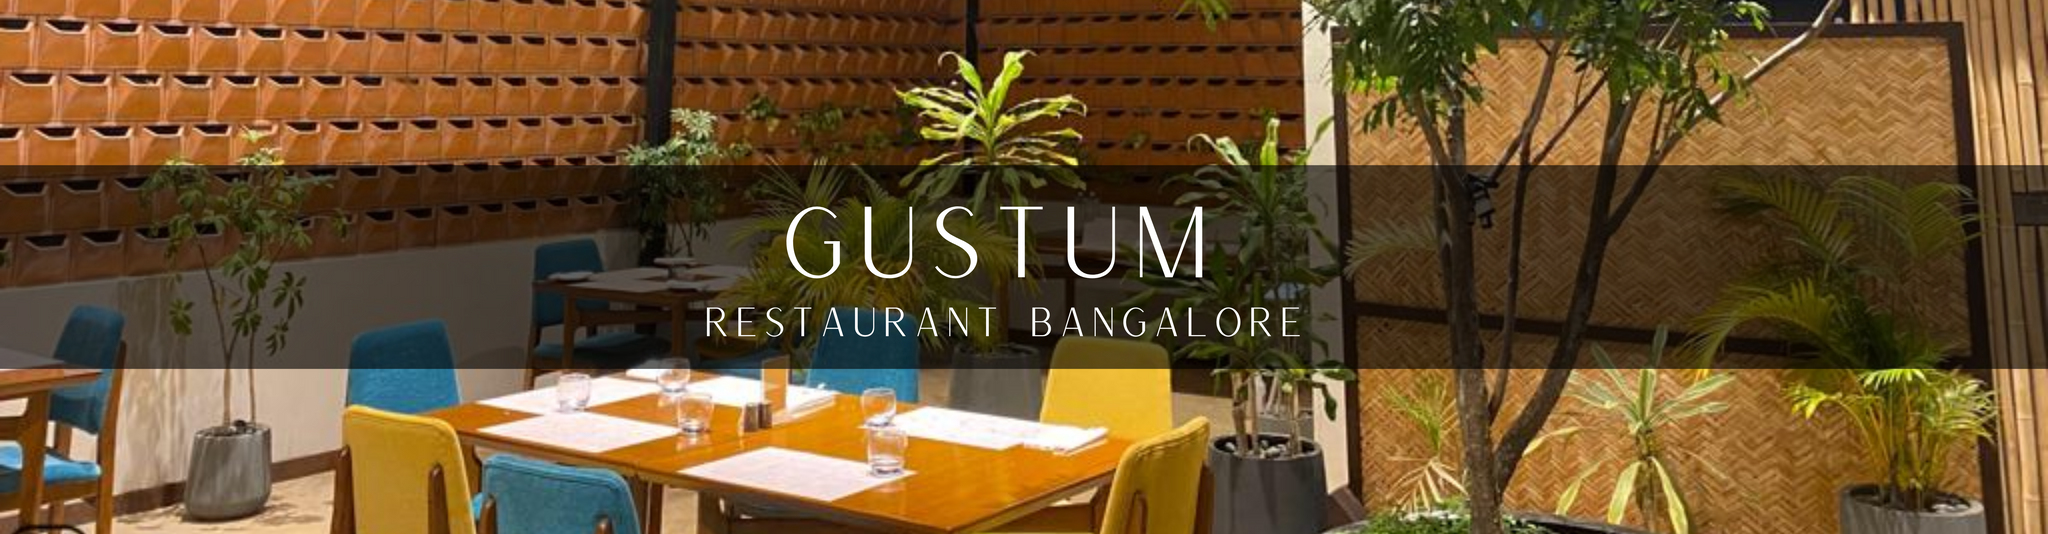 Gustum Project - Palasa Bangalore India